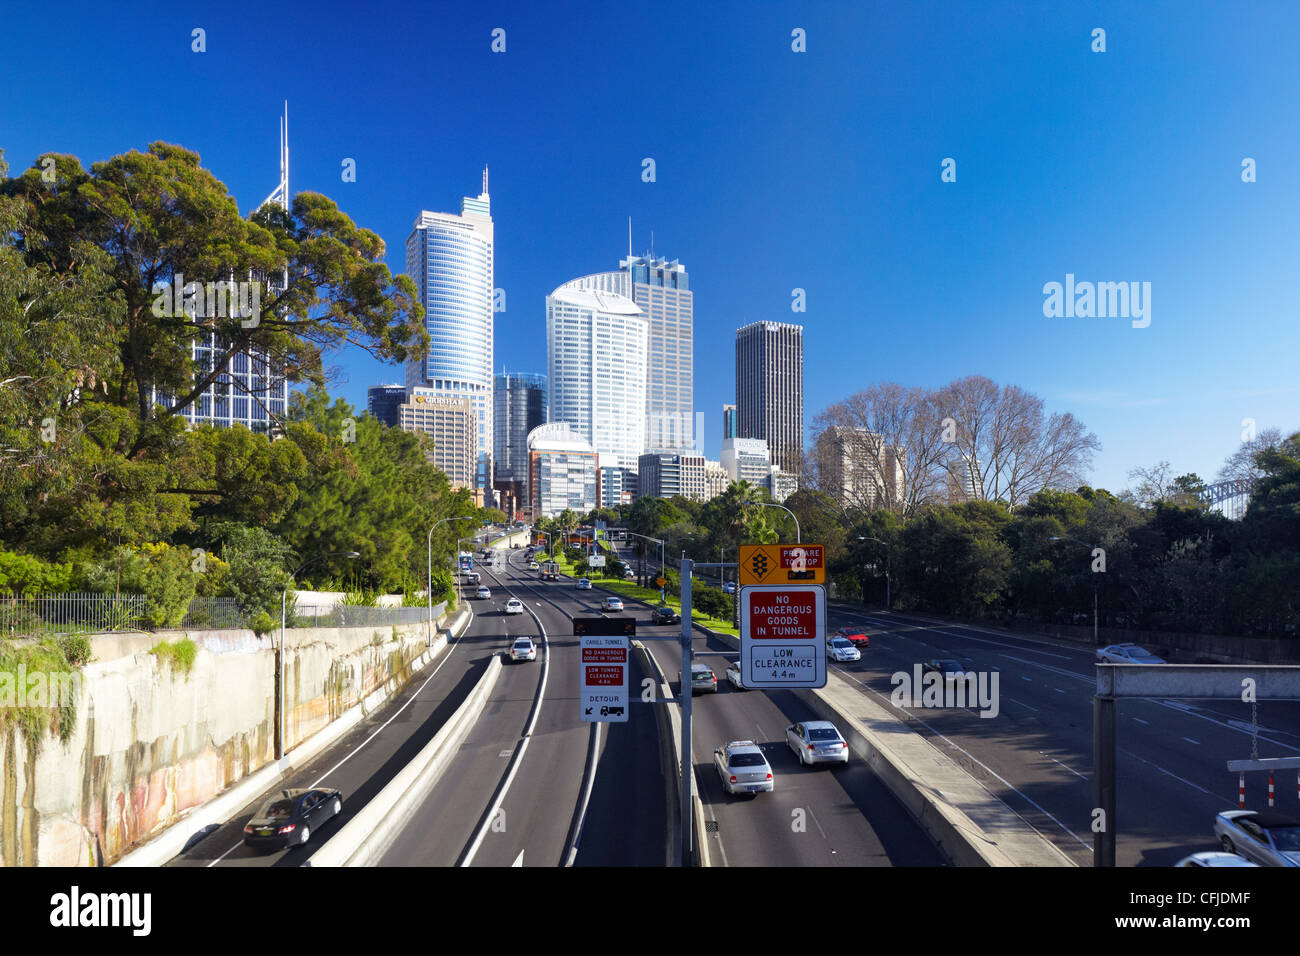 Cahill Expressway, Sydney, Australia Stock Photo